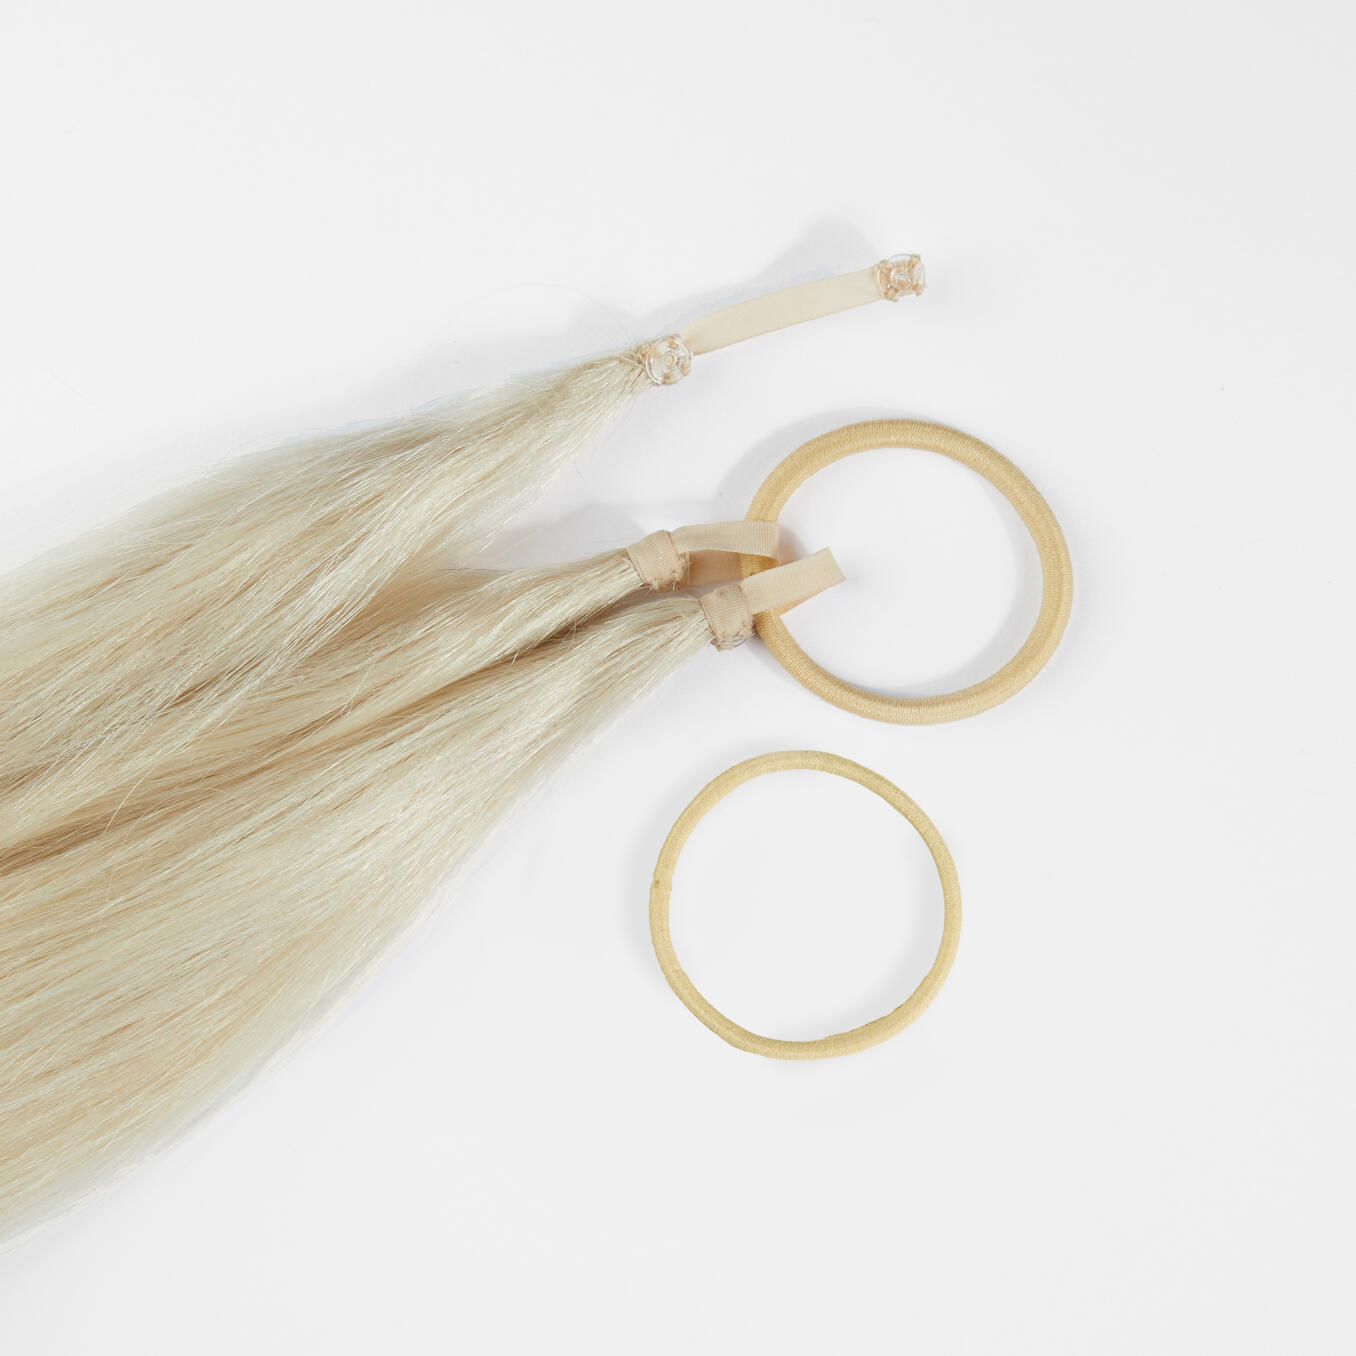 Easy Braid Extensions For voluminous braids 10.10 Platinum Blonde 55 cm